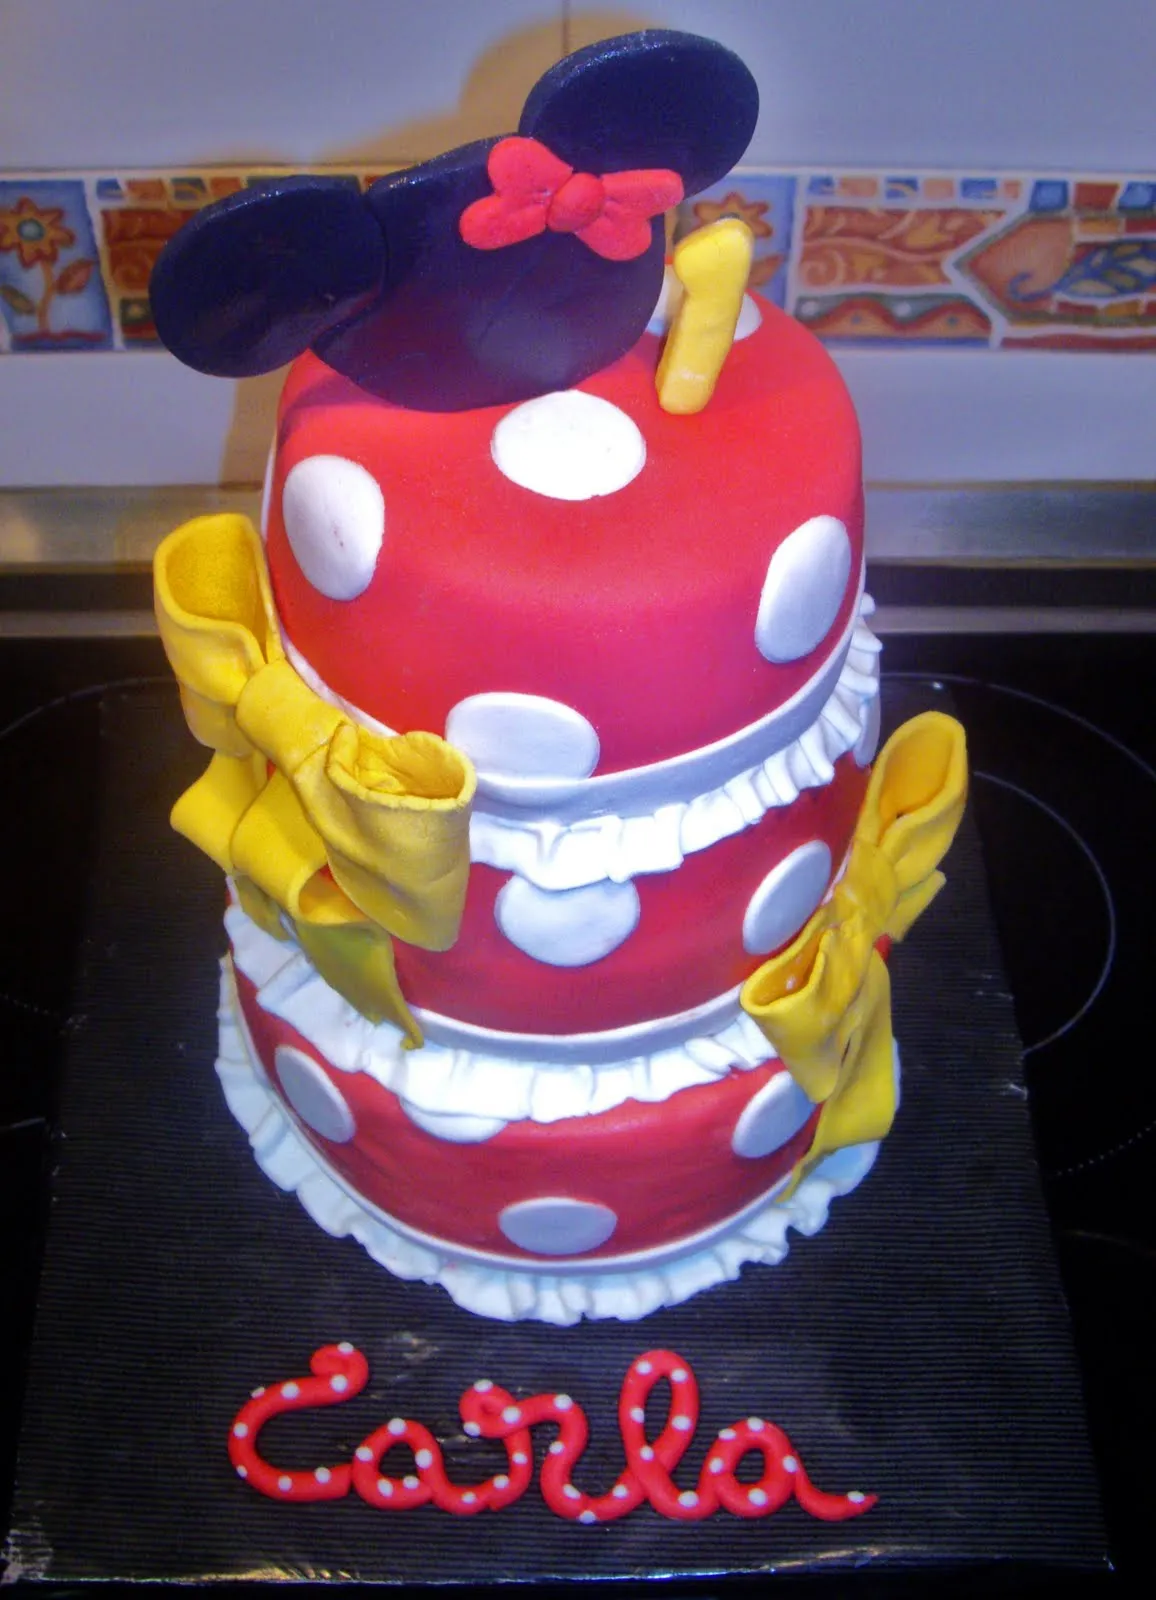  ... tarta, aunque sencilla, los colores son los clásicos de Minnie